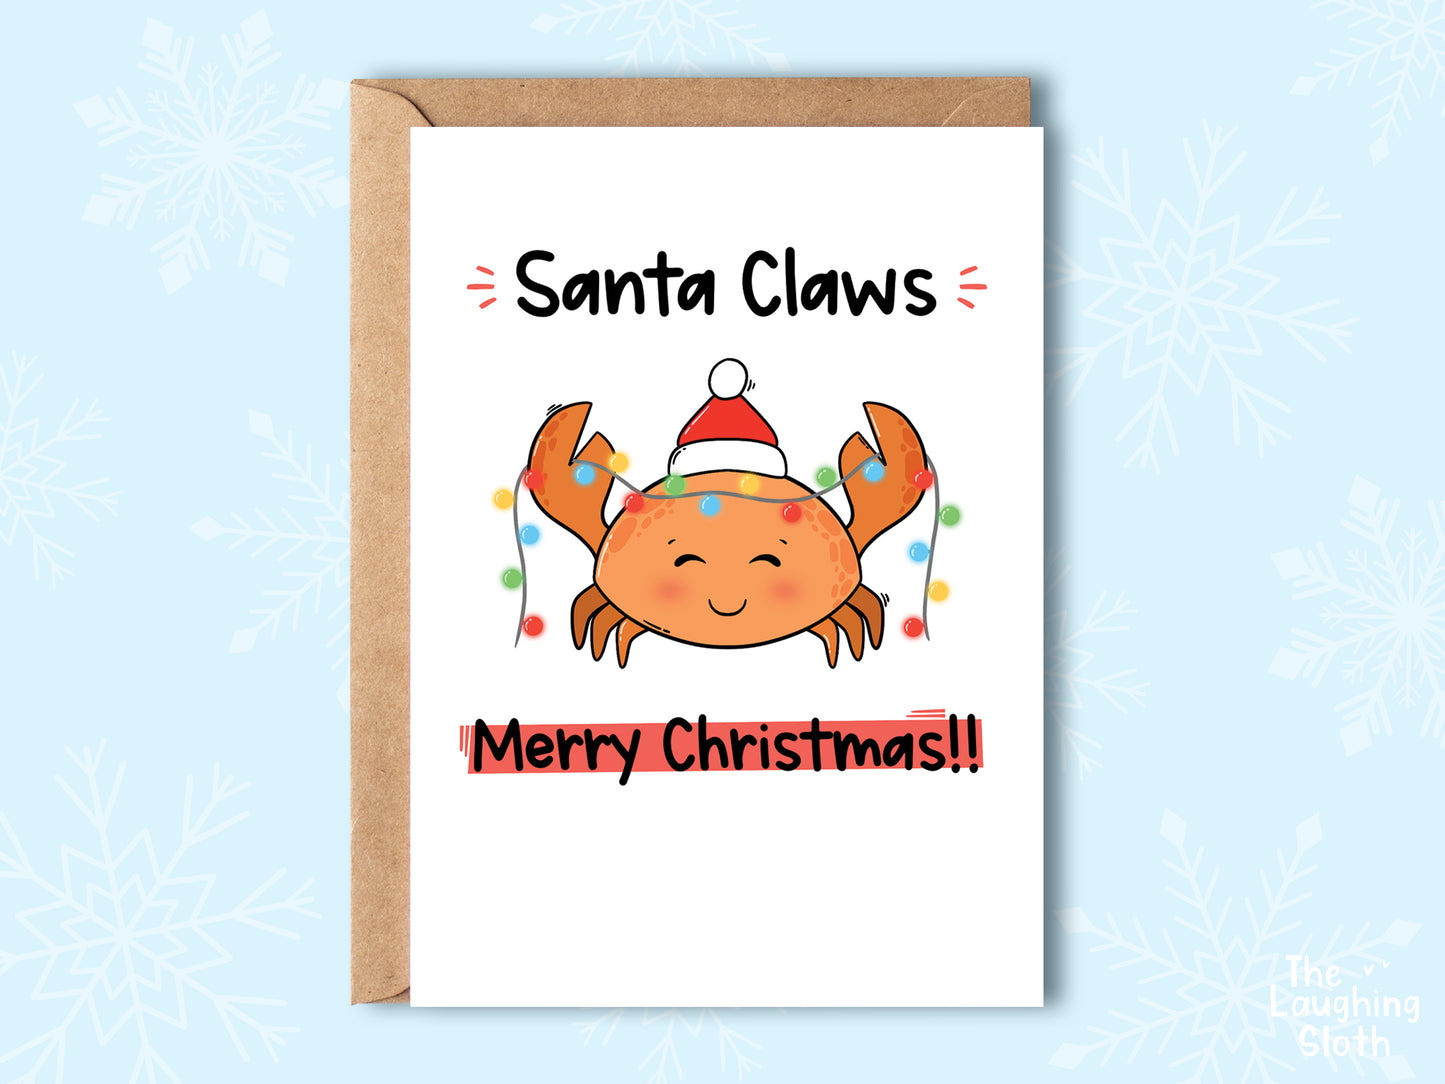 Crab - Santa Claws!